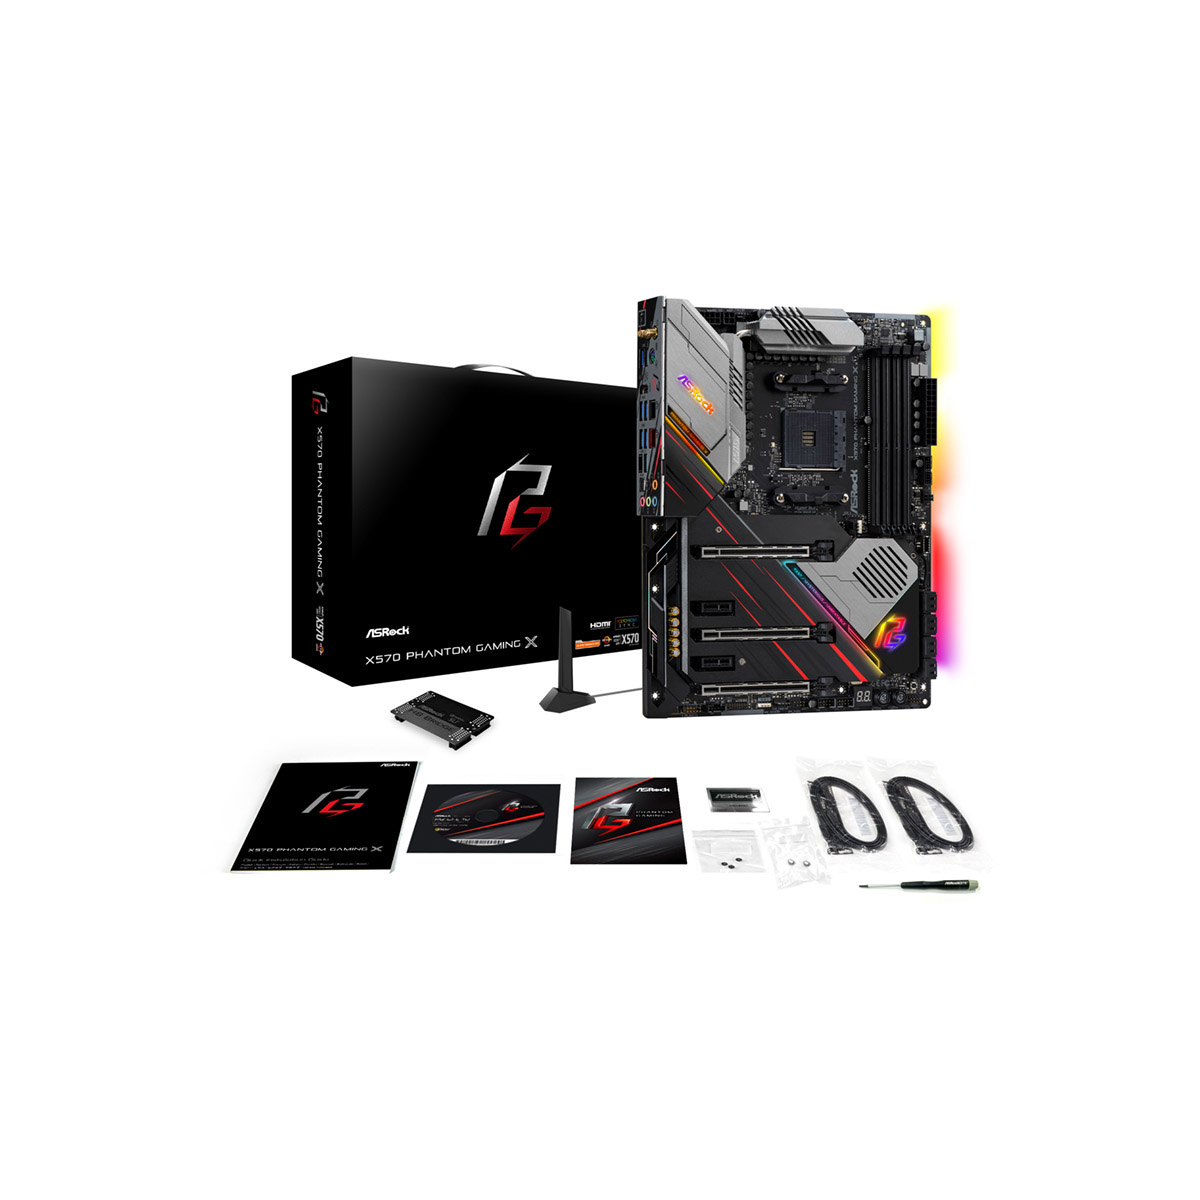 X570 Phantom Gaming X | ASRock(アスロック) Socket AM4 AMD X570 ATX 